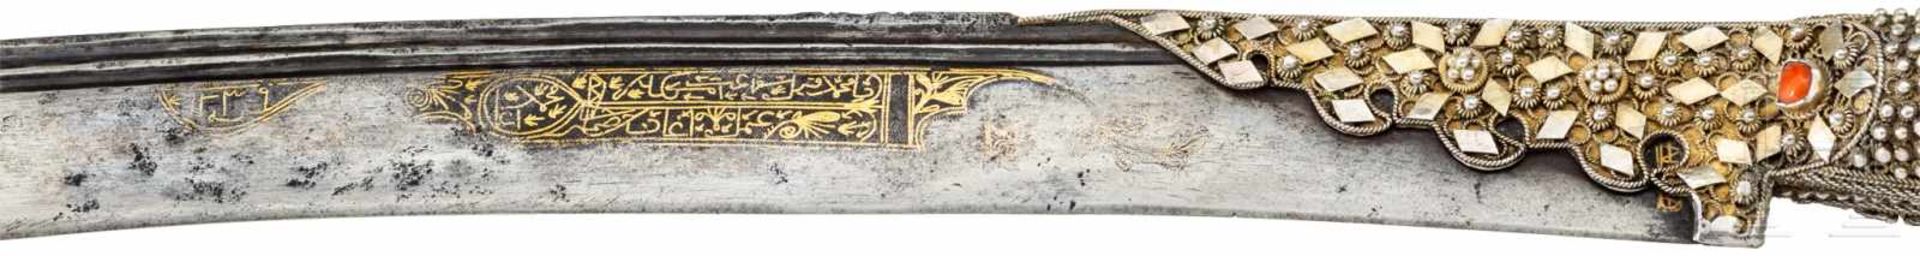 Silbermontierter und korallenbesetzter Yatagan für Offiziere, osmanisch, datiert 1239H (1823/4) - Bild 5 aus 6